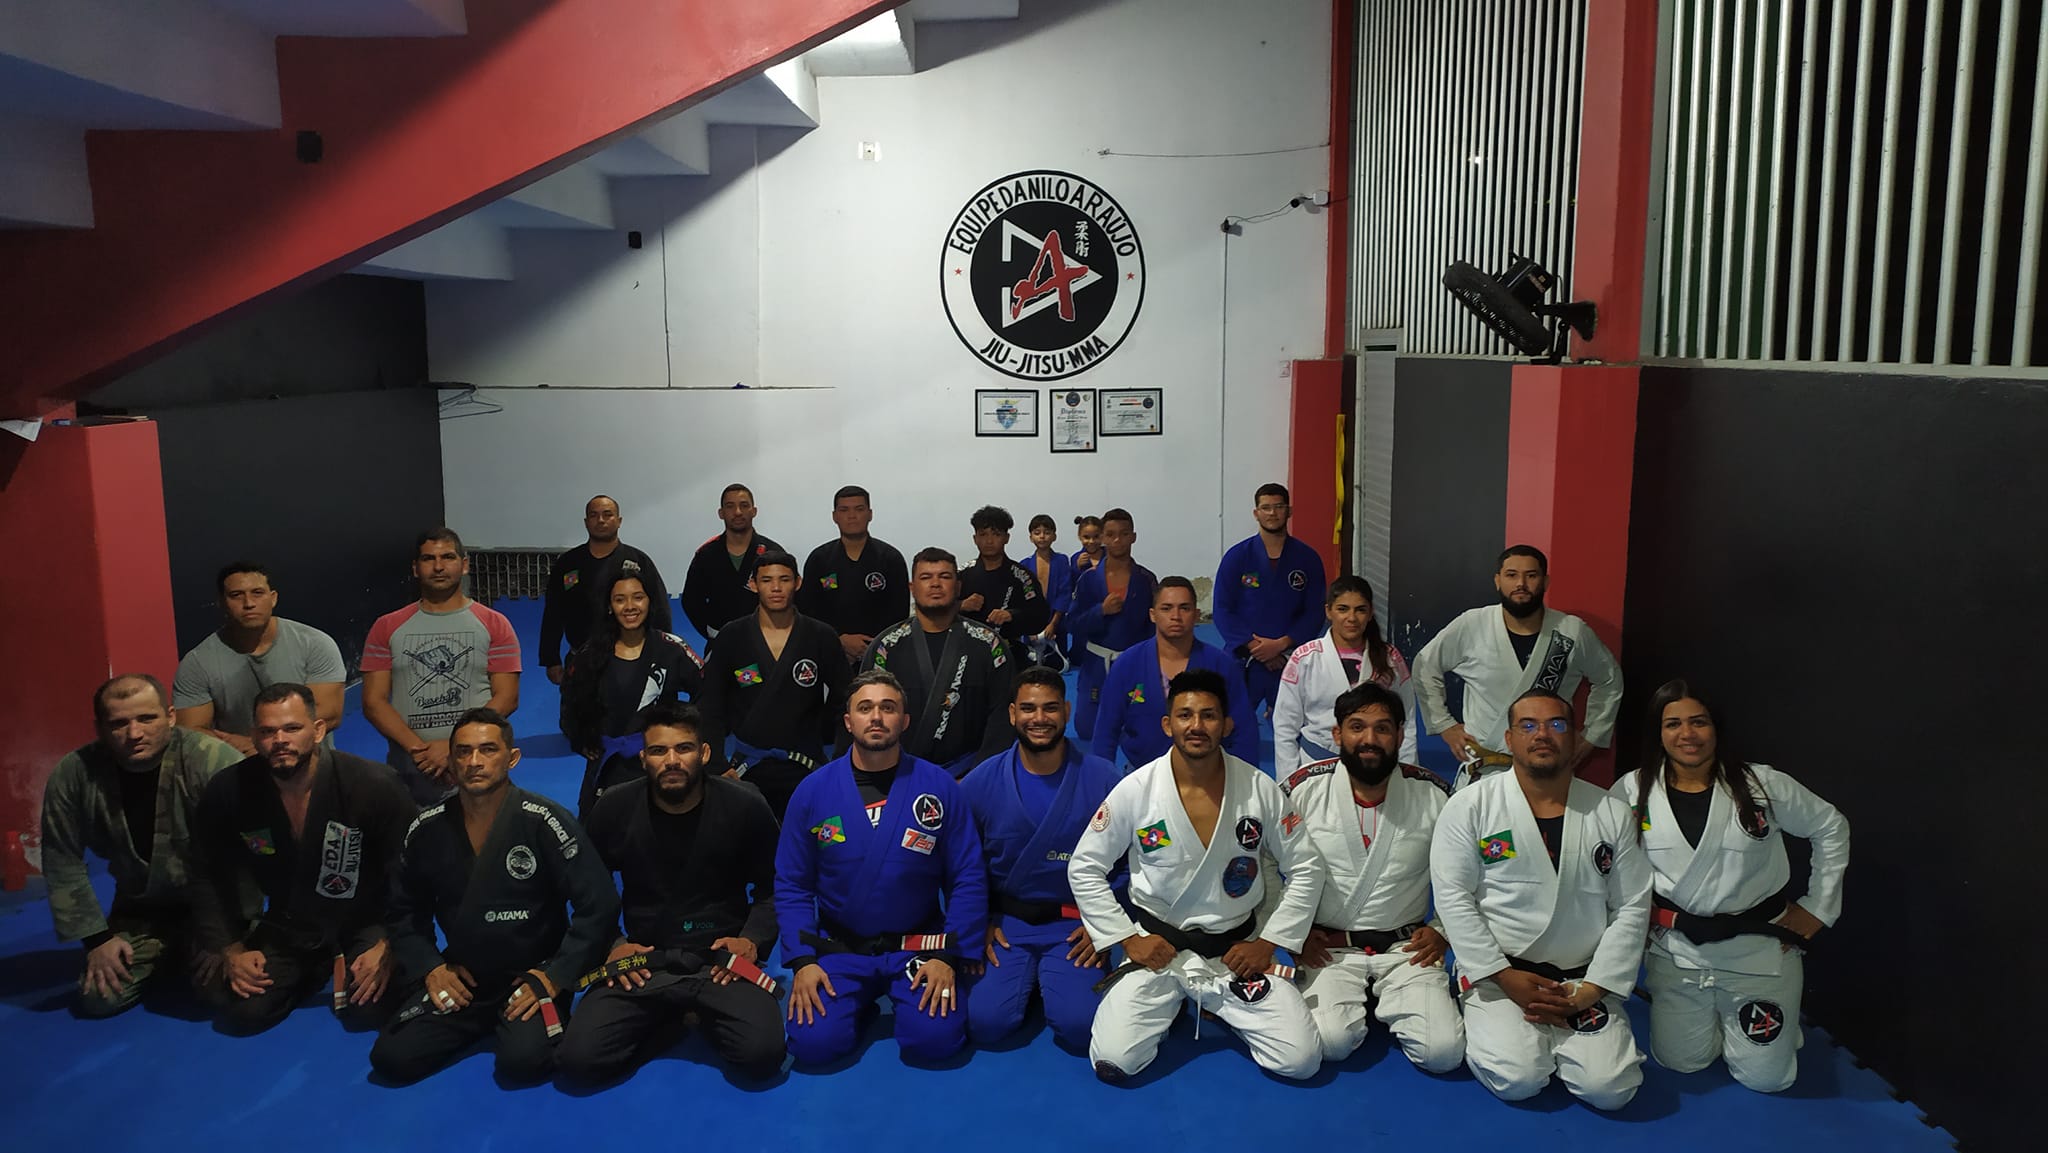 Equipe Danilo Araújo gradua atletas de Jiu-jitsu em Bragança do Pará.